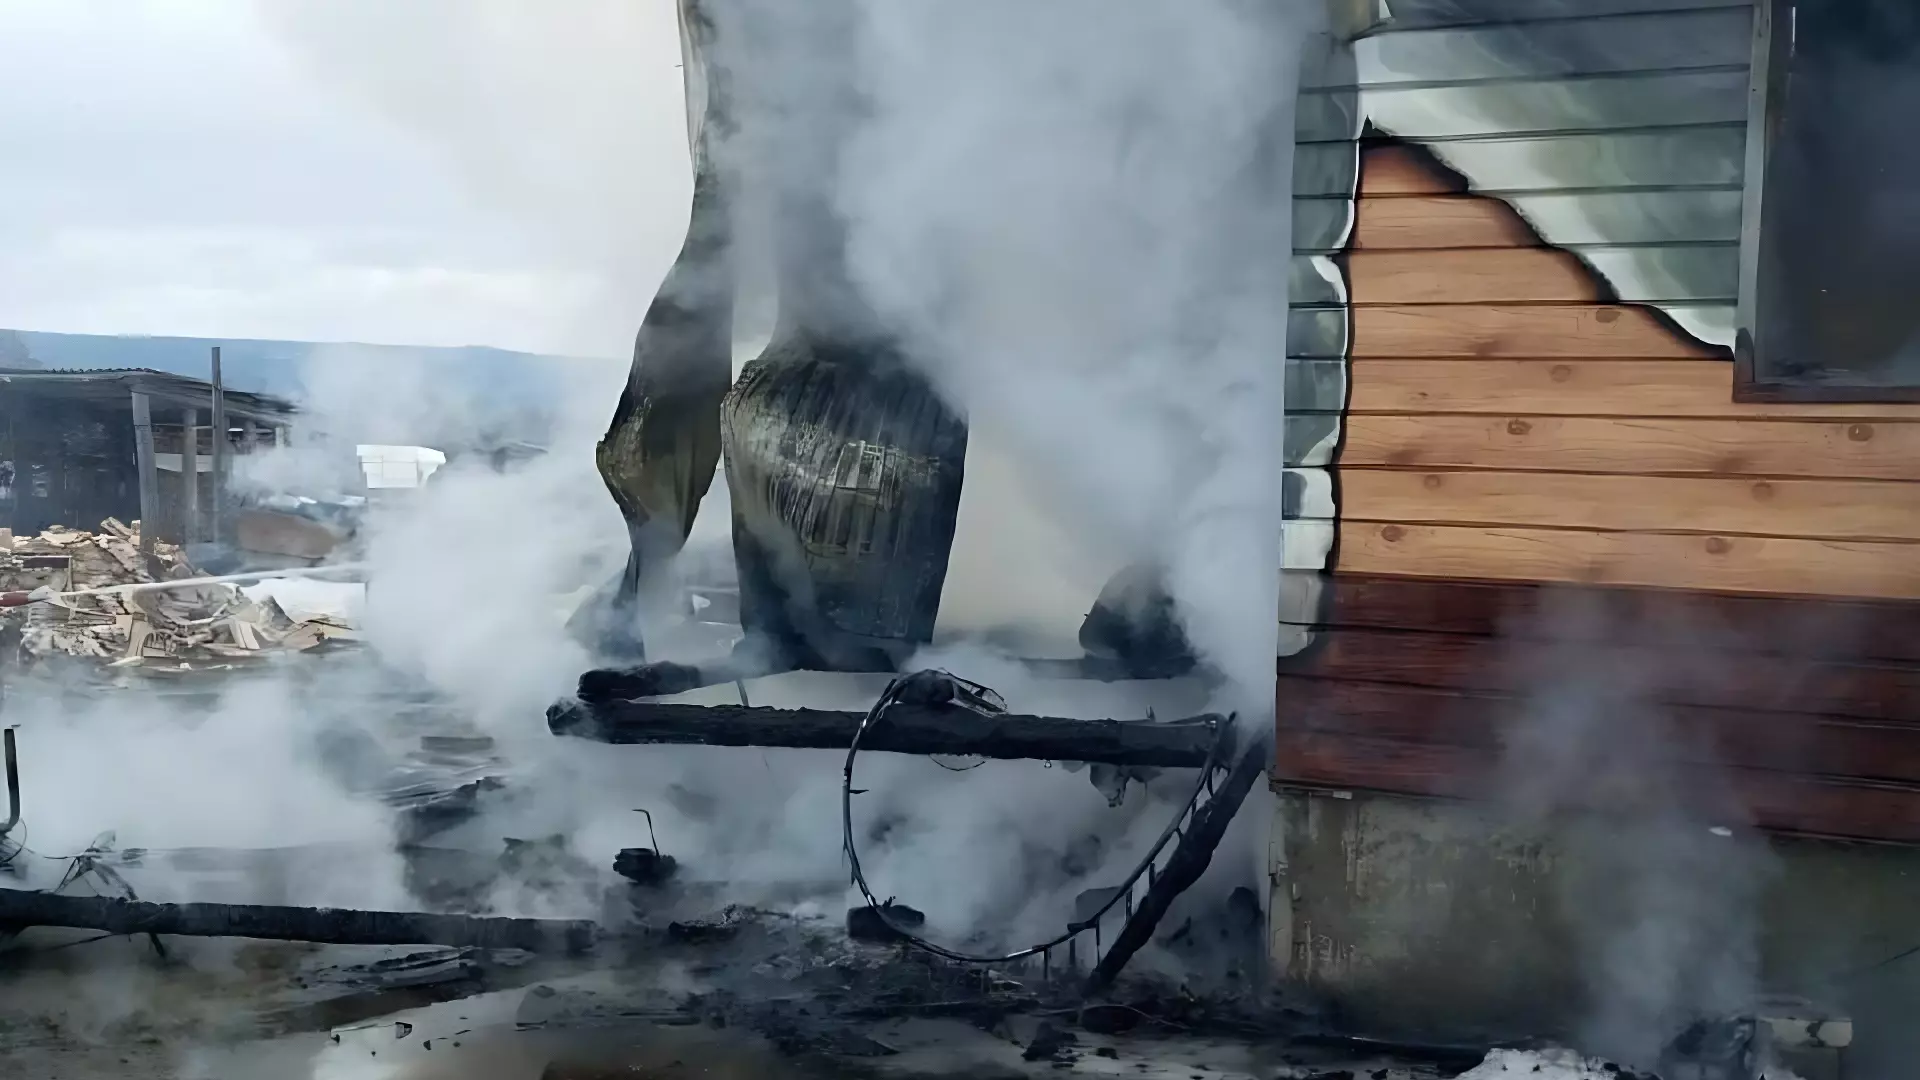 Дети пытались высушить одеяла, но сожгли дом в Башкирии